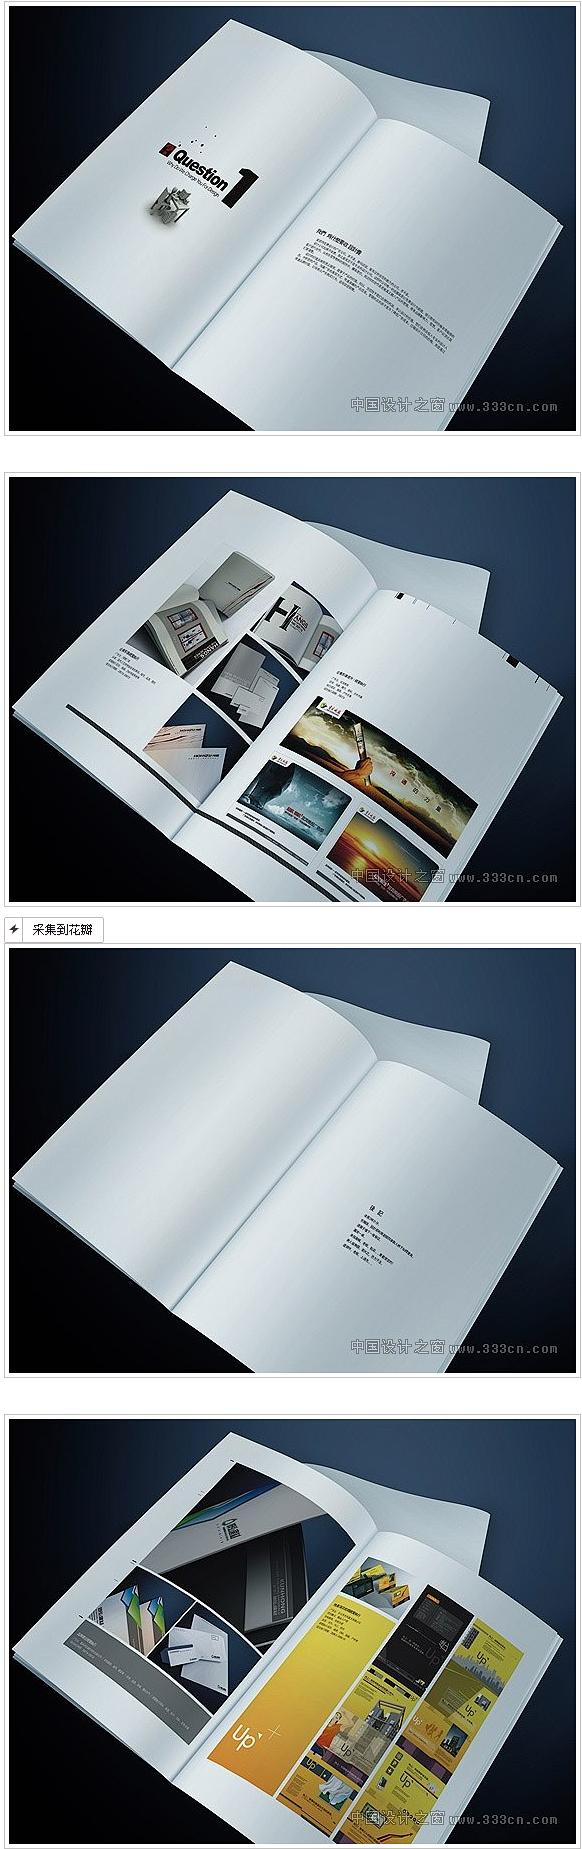 画册设计作品欣赏(5)-画册设计-设计-...